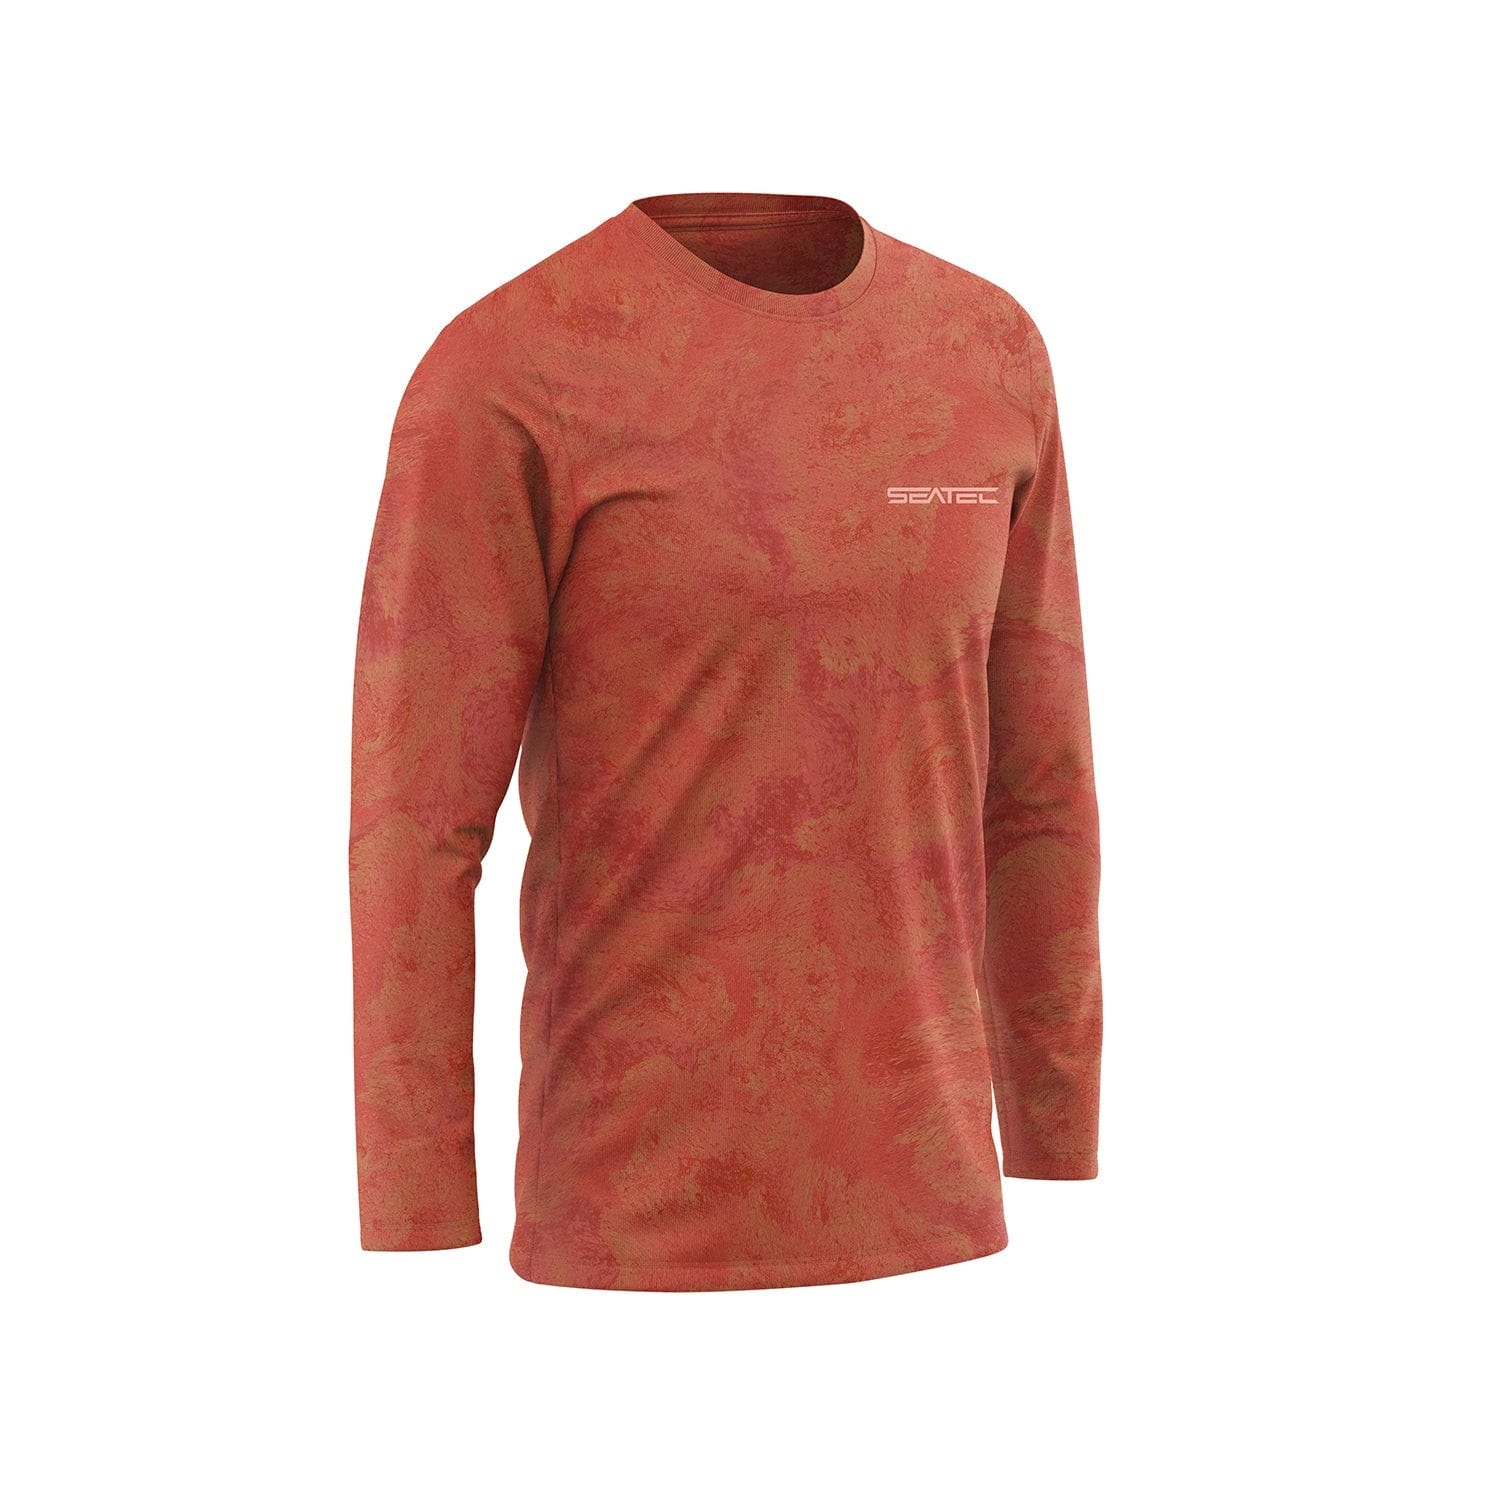 Men's Sport Tec | Fire Coral | Crew Shirt | Size Medium